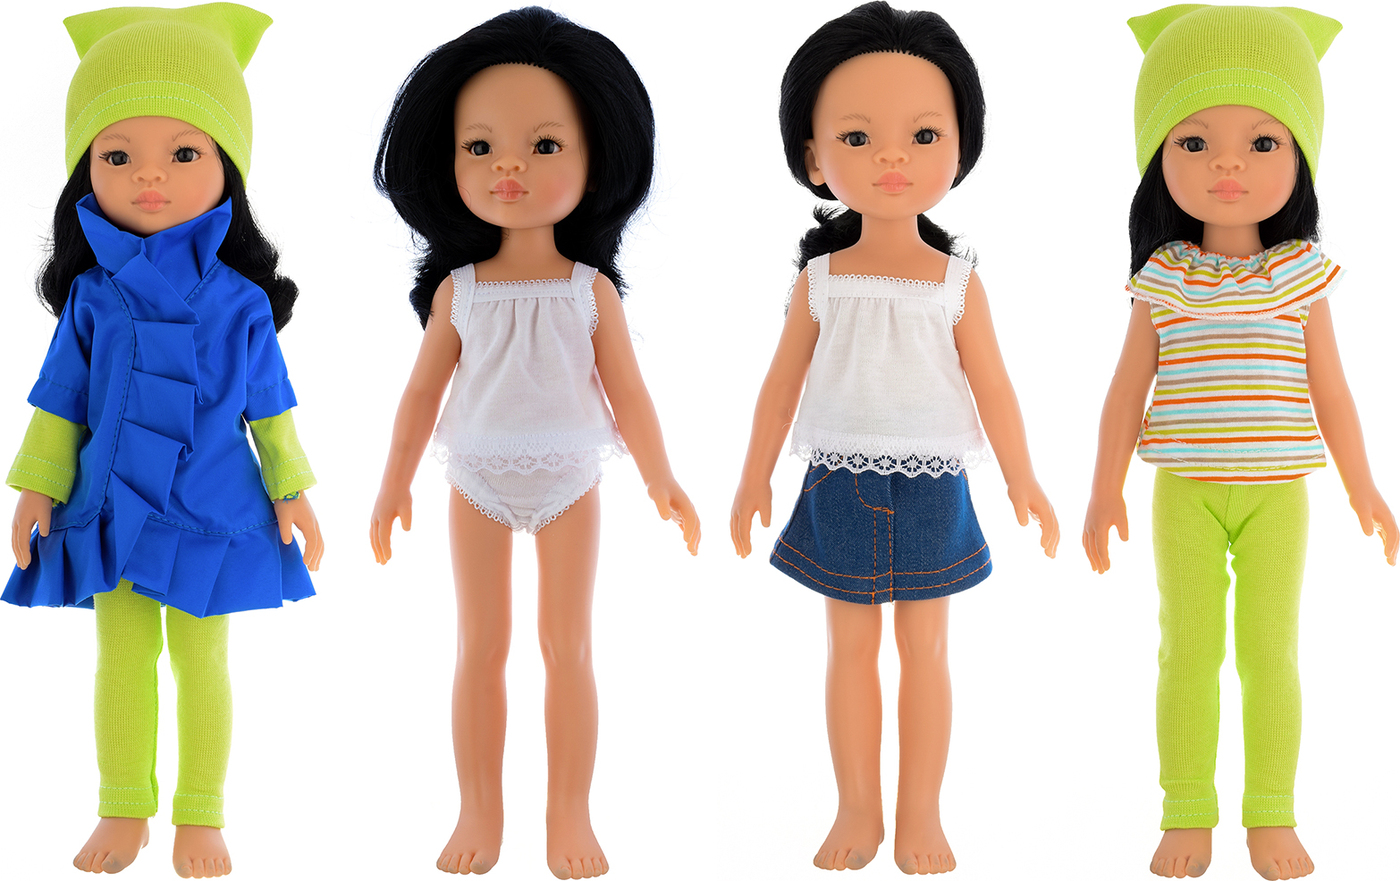 Одежда для кукол 32 см. Одежда для Паола Рейна 32. Одежда для кукол Паола Рейна 32 см. Одежда для куклы Паола Рейна с лосинами. Одежда для кукол Paola Reina 32 см.